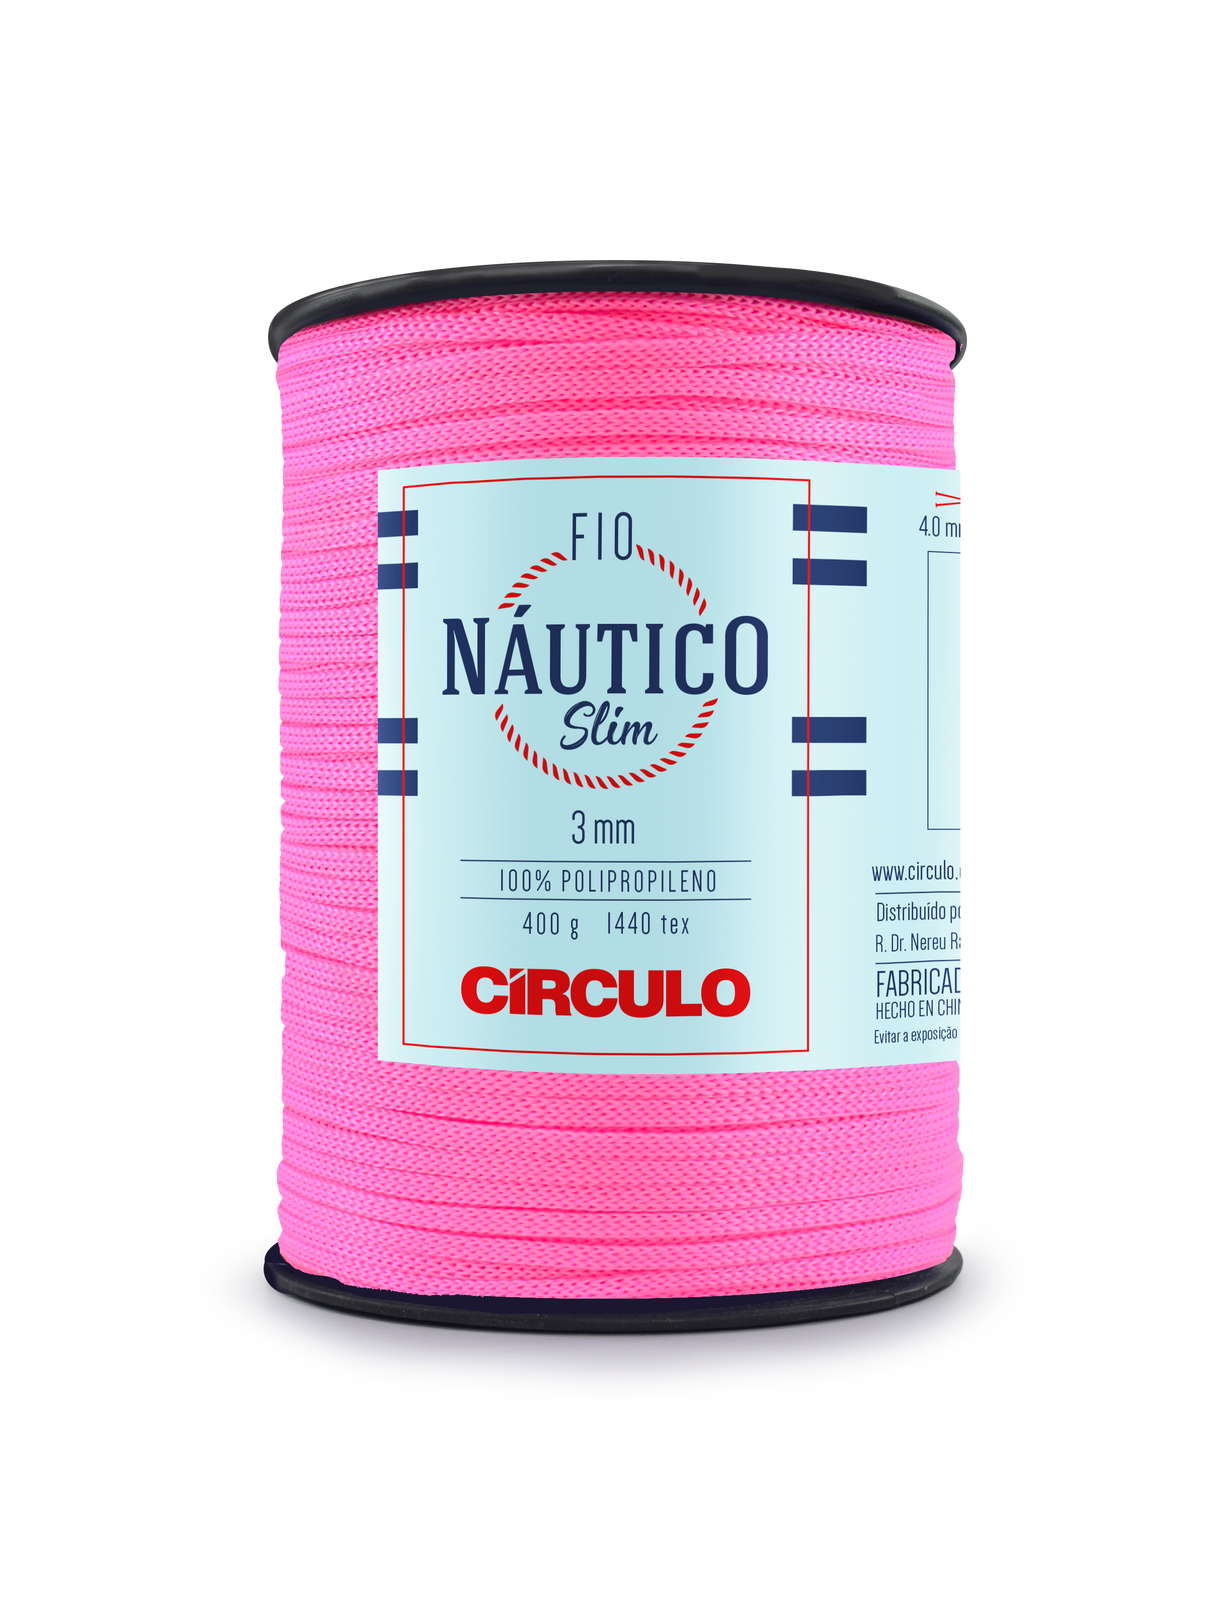 Circulo Fio Nautico Slim 3 mm color 6011